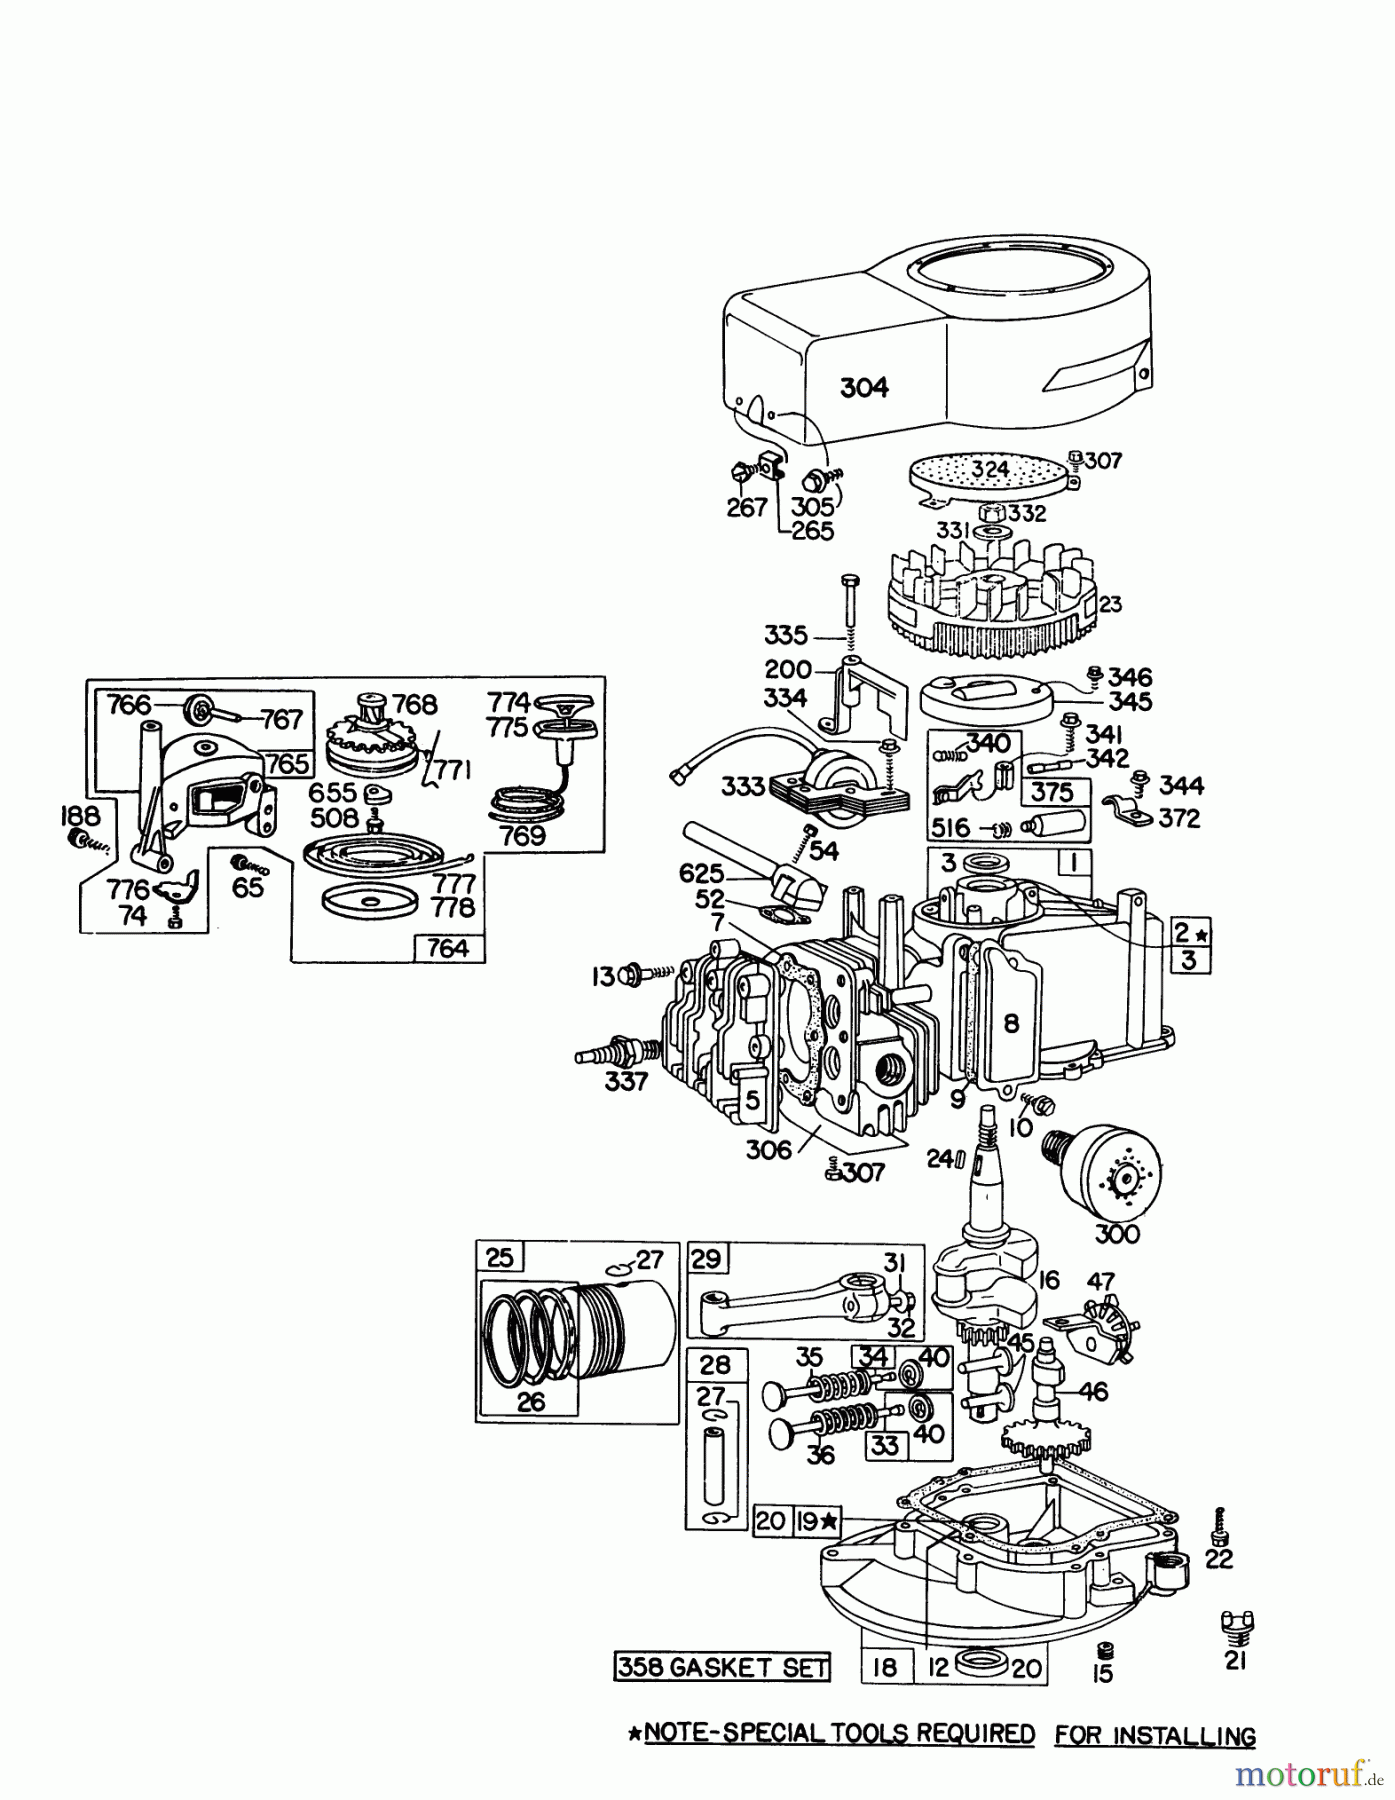  Toro Neu Mowers, Walk-Behind Seite 1 16155 - Toro Whirlwind II Lawnmower, 1977 (7000001-7999999) ENGINE BRIGGS & STRATTON MODEL 92908-1735-01 FOR 21